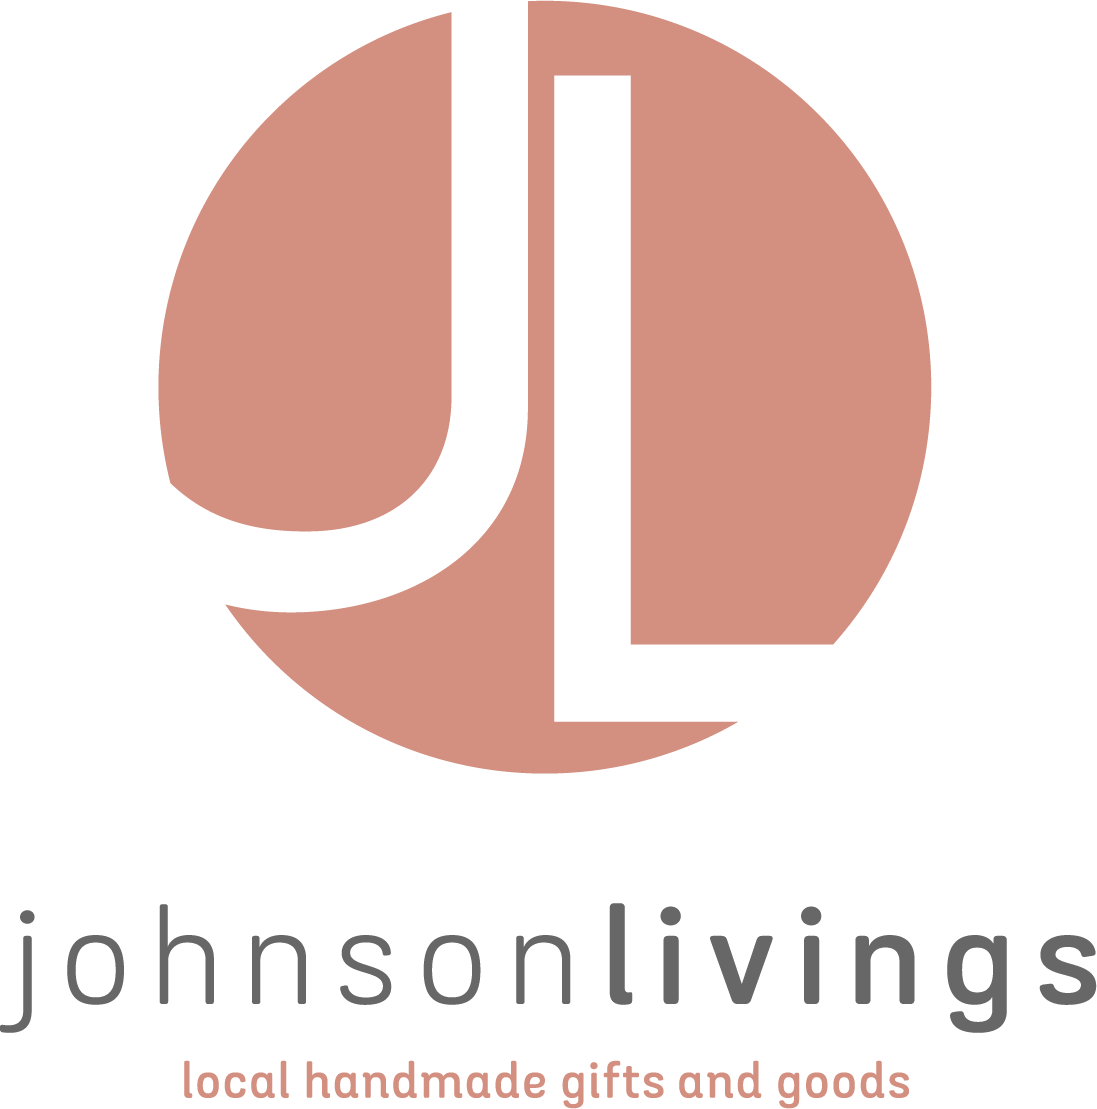 Johnson Livings LLC